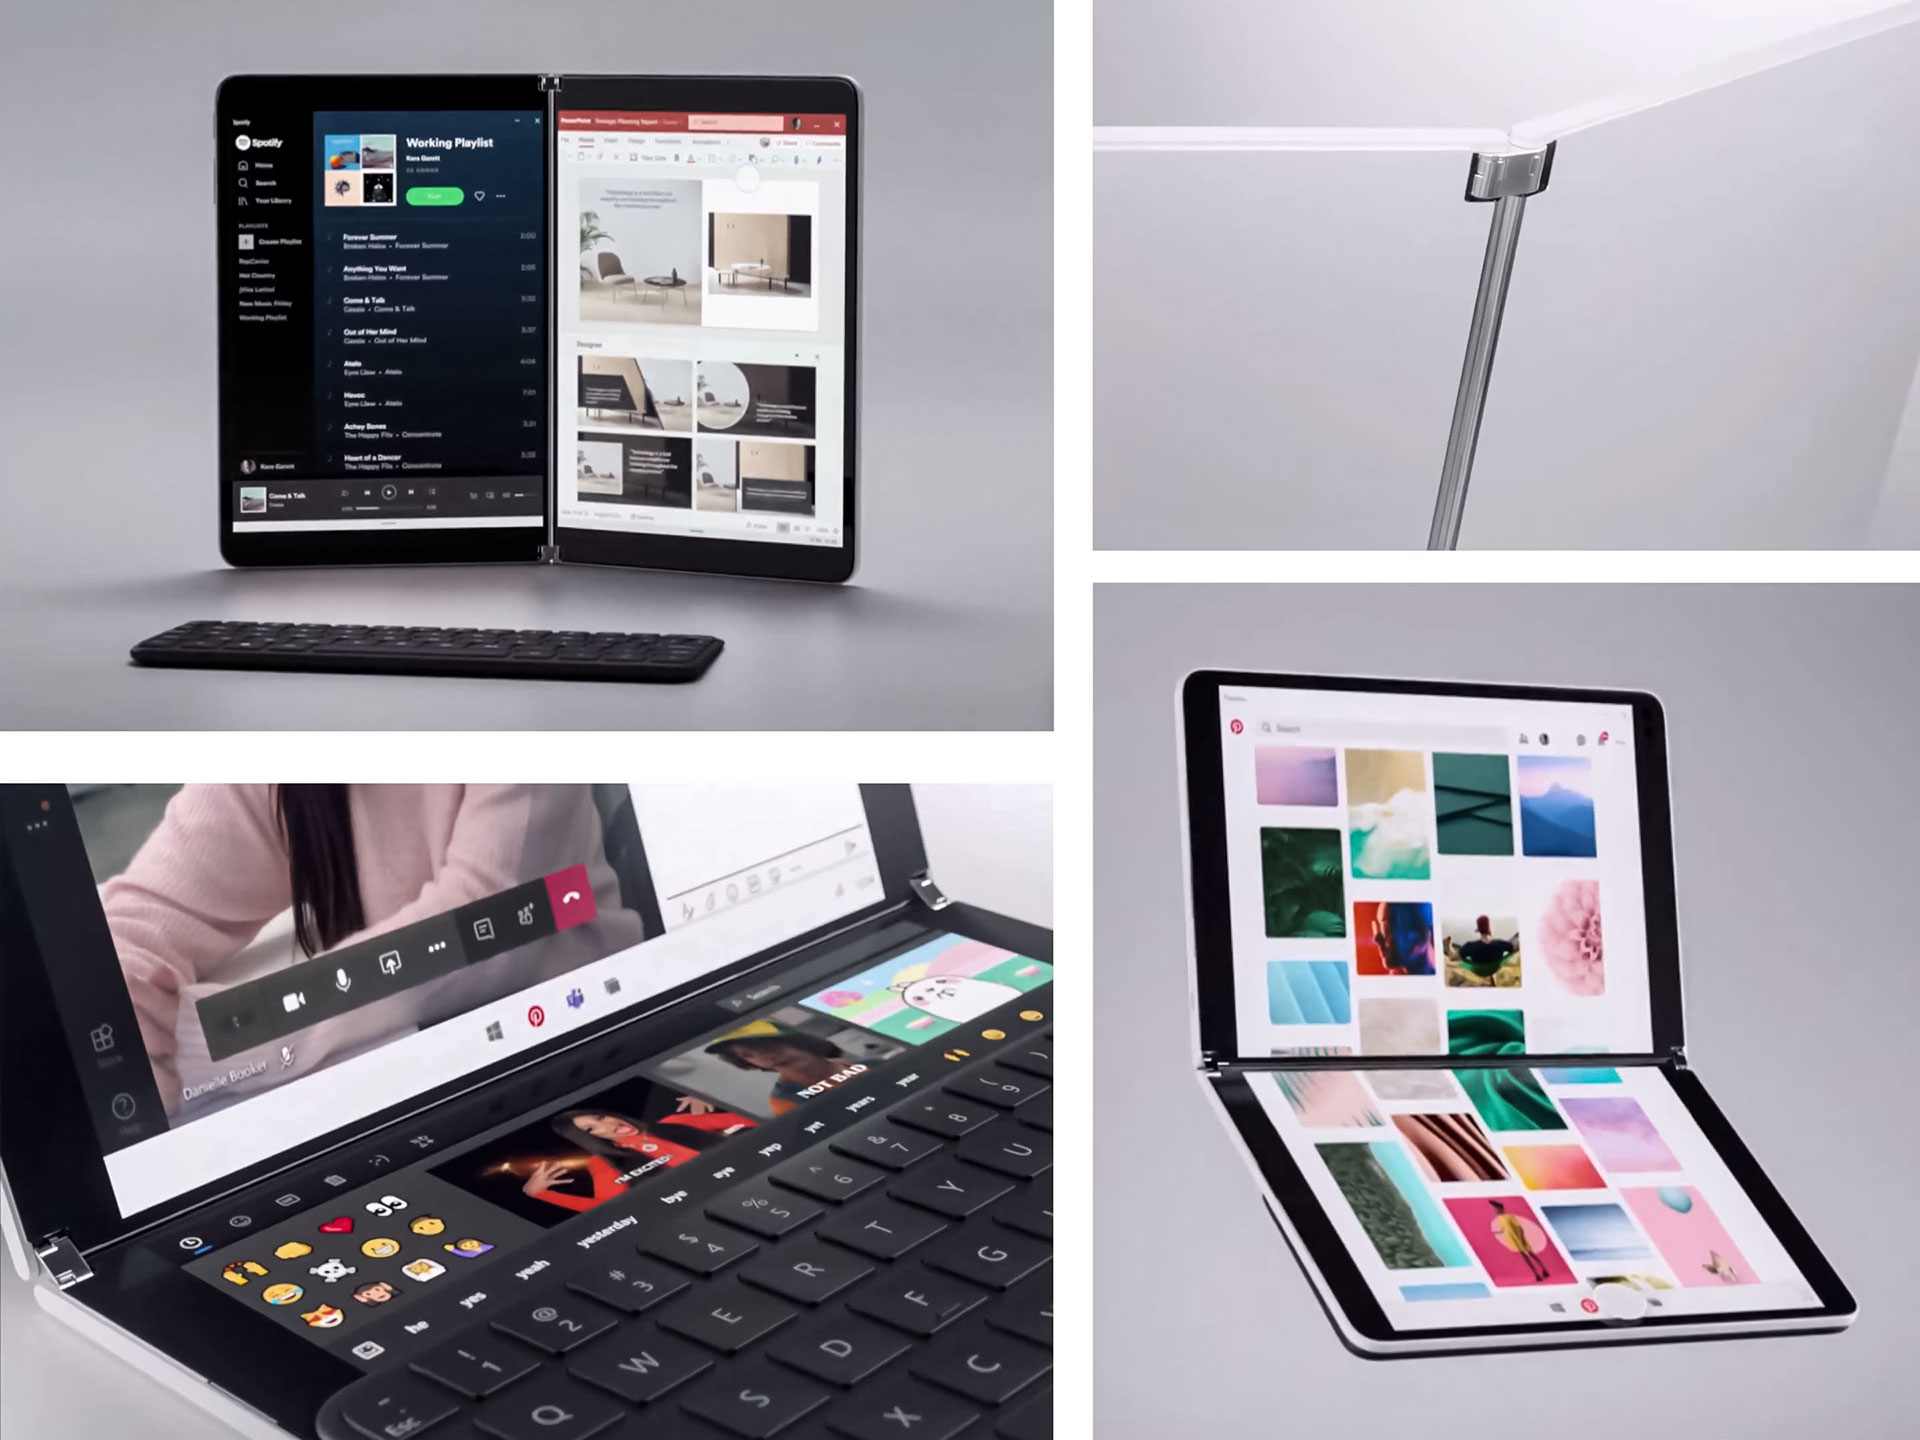 سرفیس نئو (Surface Neo) مایکروسافت رسما معرفی شد: رویای دستگاه ویندوزی تاشو